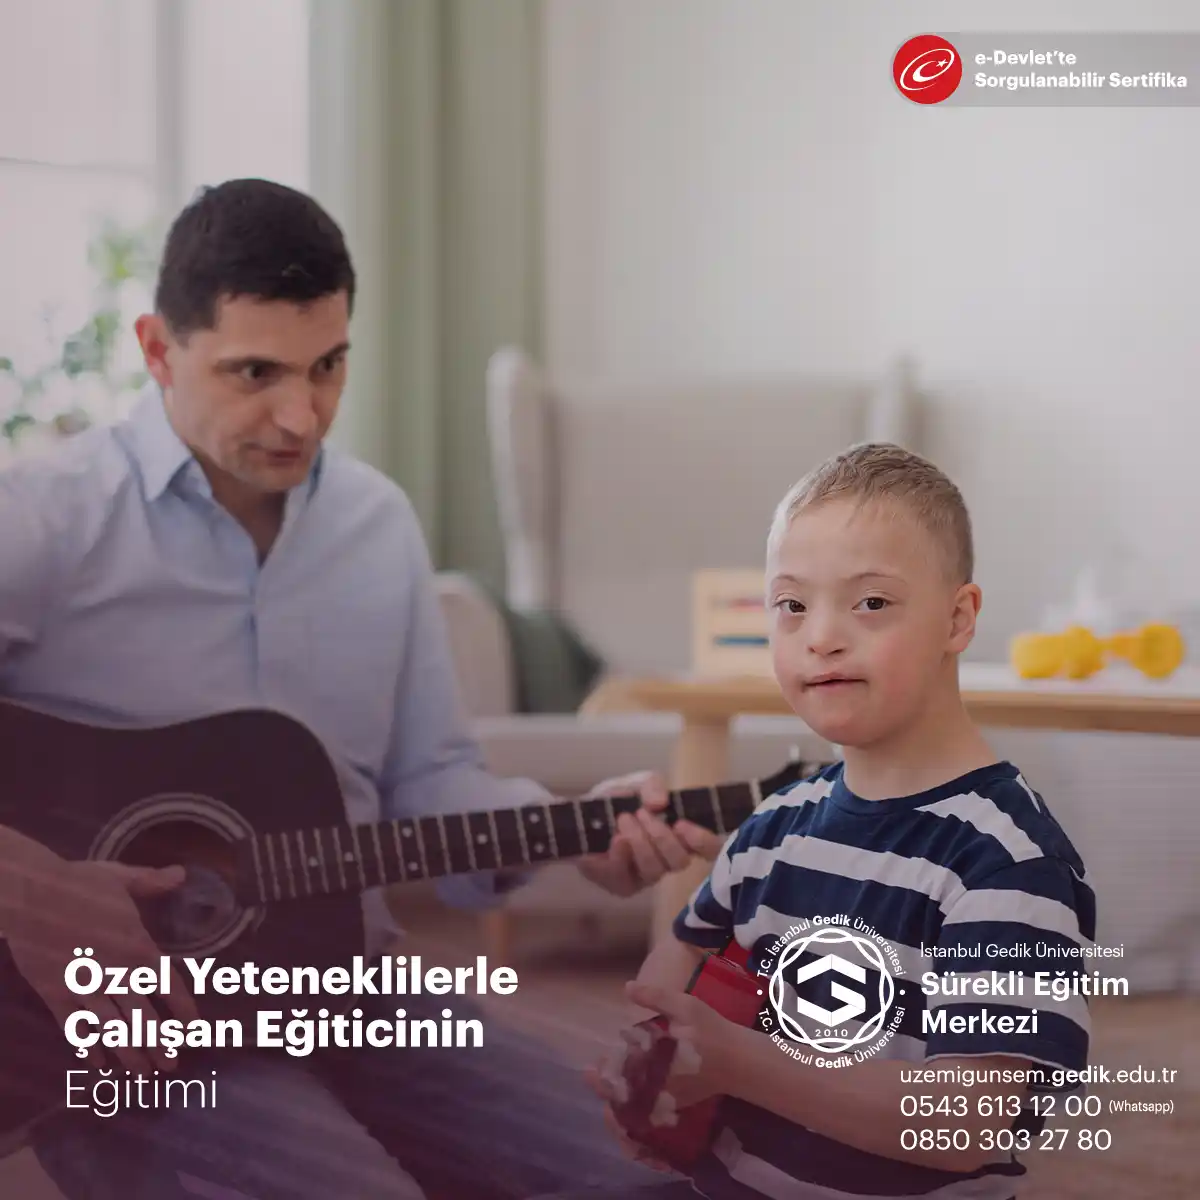 Türkiye'de "özel yetenekliler" terimi, özel gereksinimleri olan ve bu gereksinimlerinin karşılanması için özel eğitim ve destek gerektiren çocuklar ve yetişkinler için kullanılır.